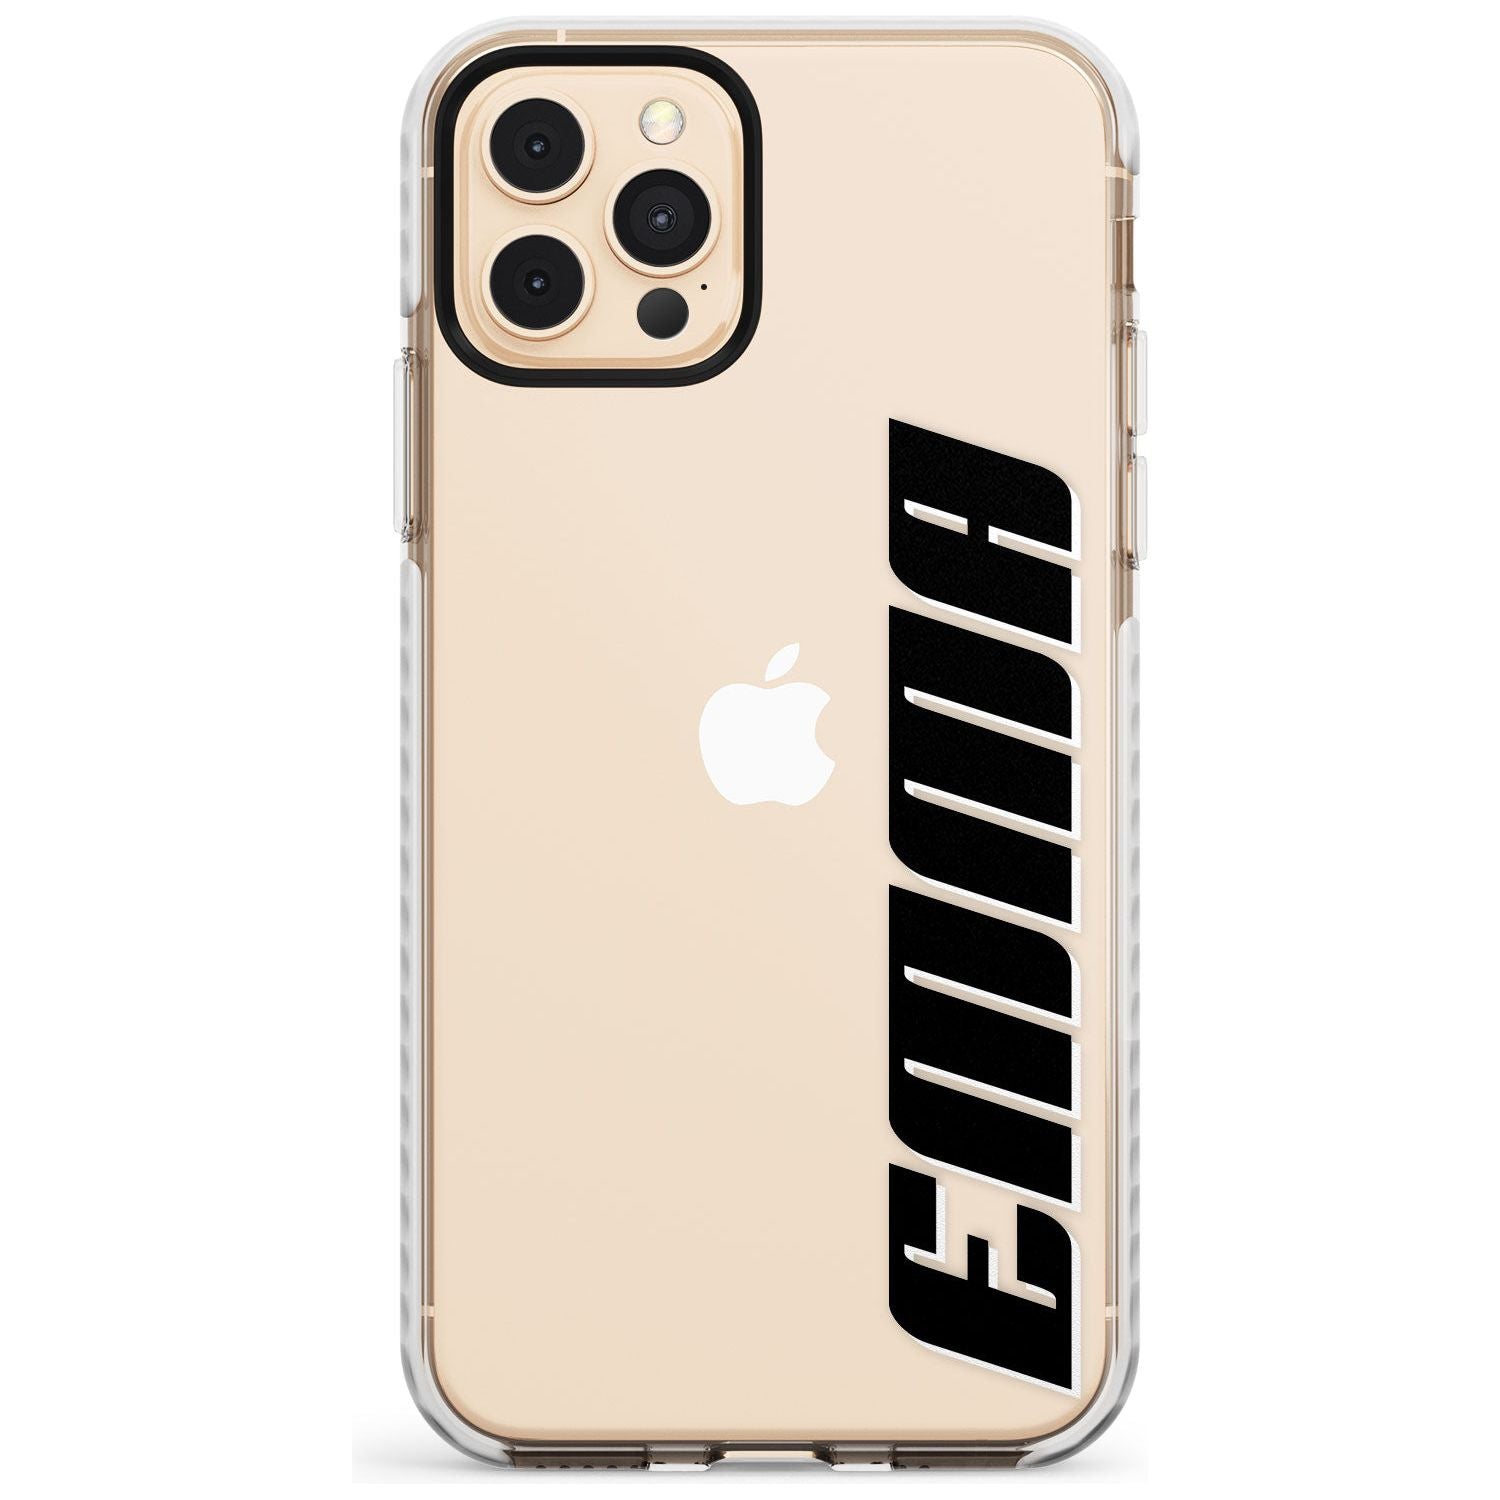 Custom Iphone Case 4A Slim TPU Phone Case for iPhone 11 Pro Max